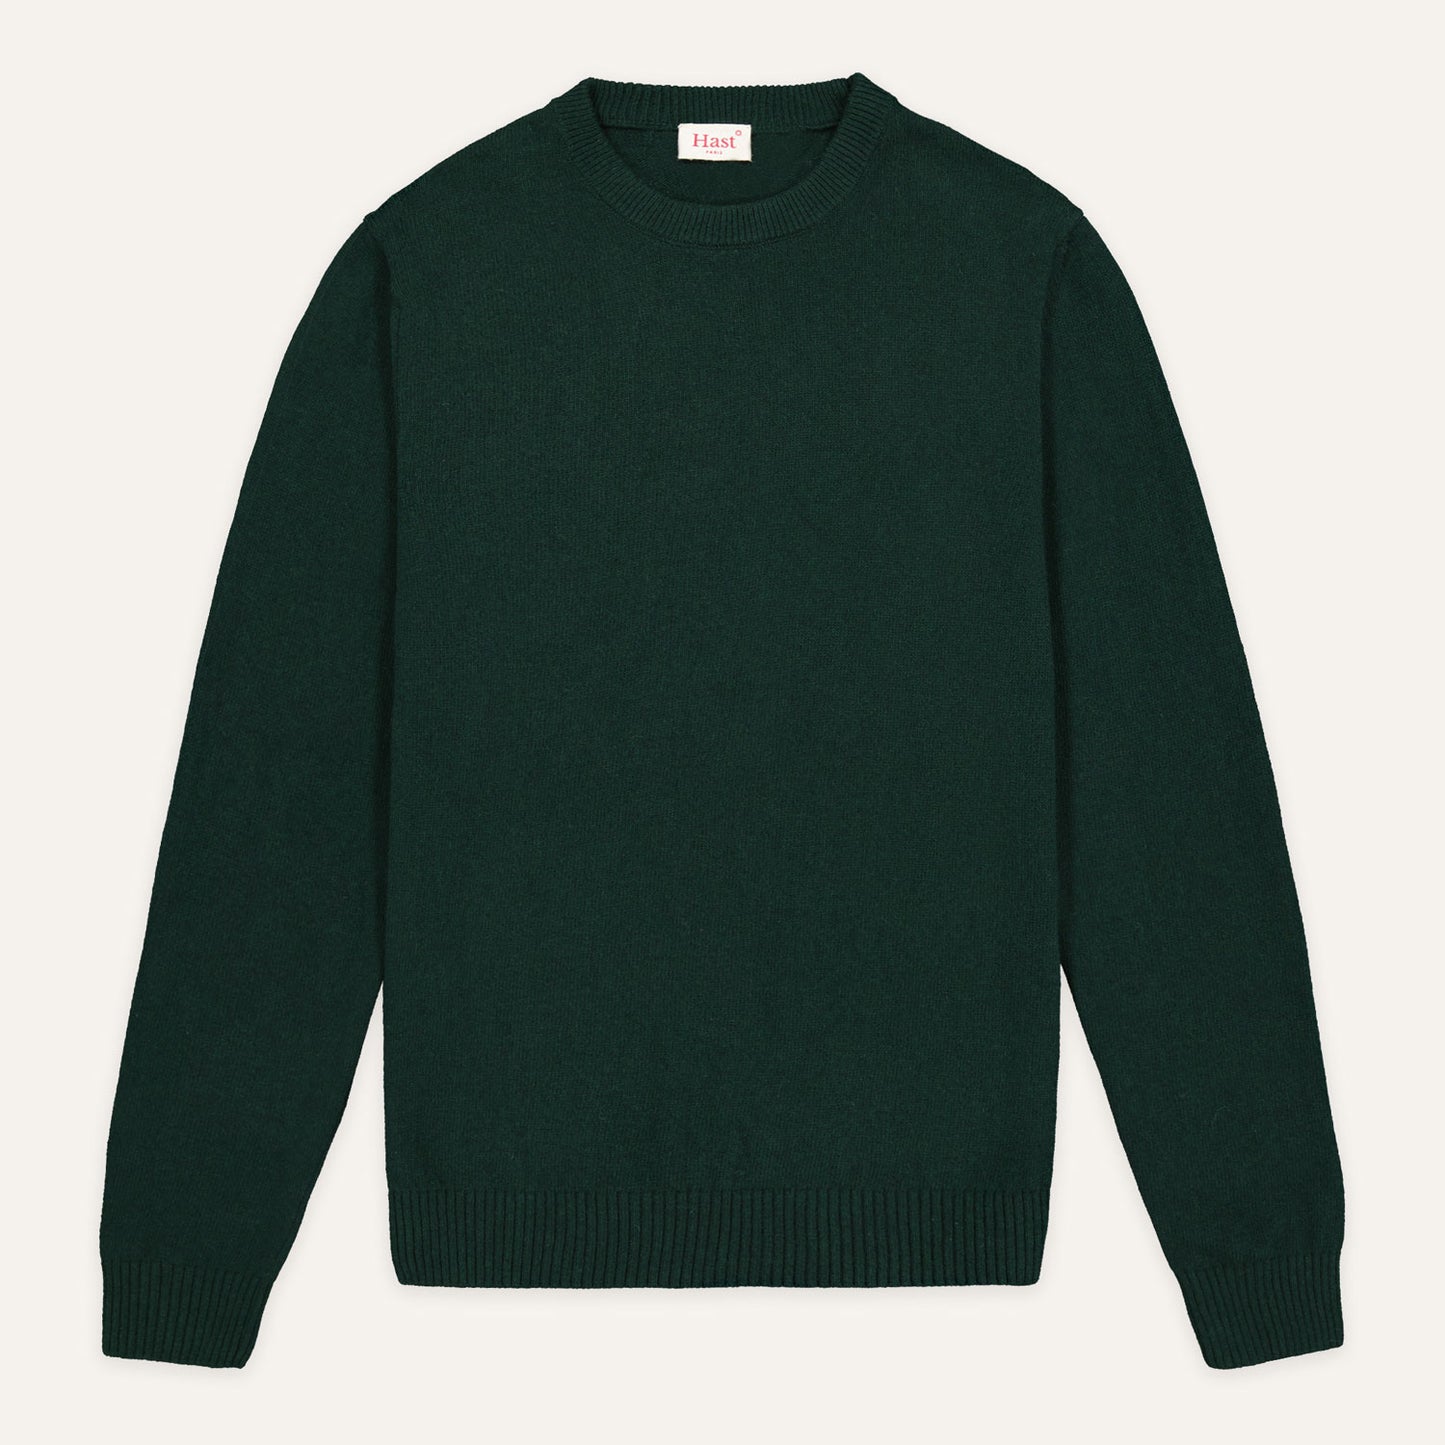 Fir green wool sweater